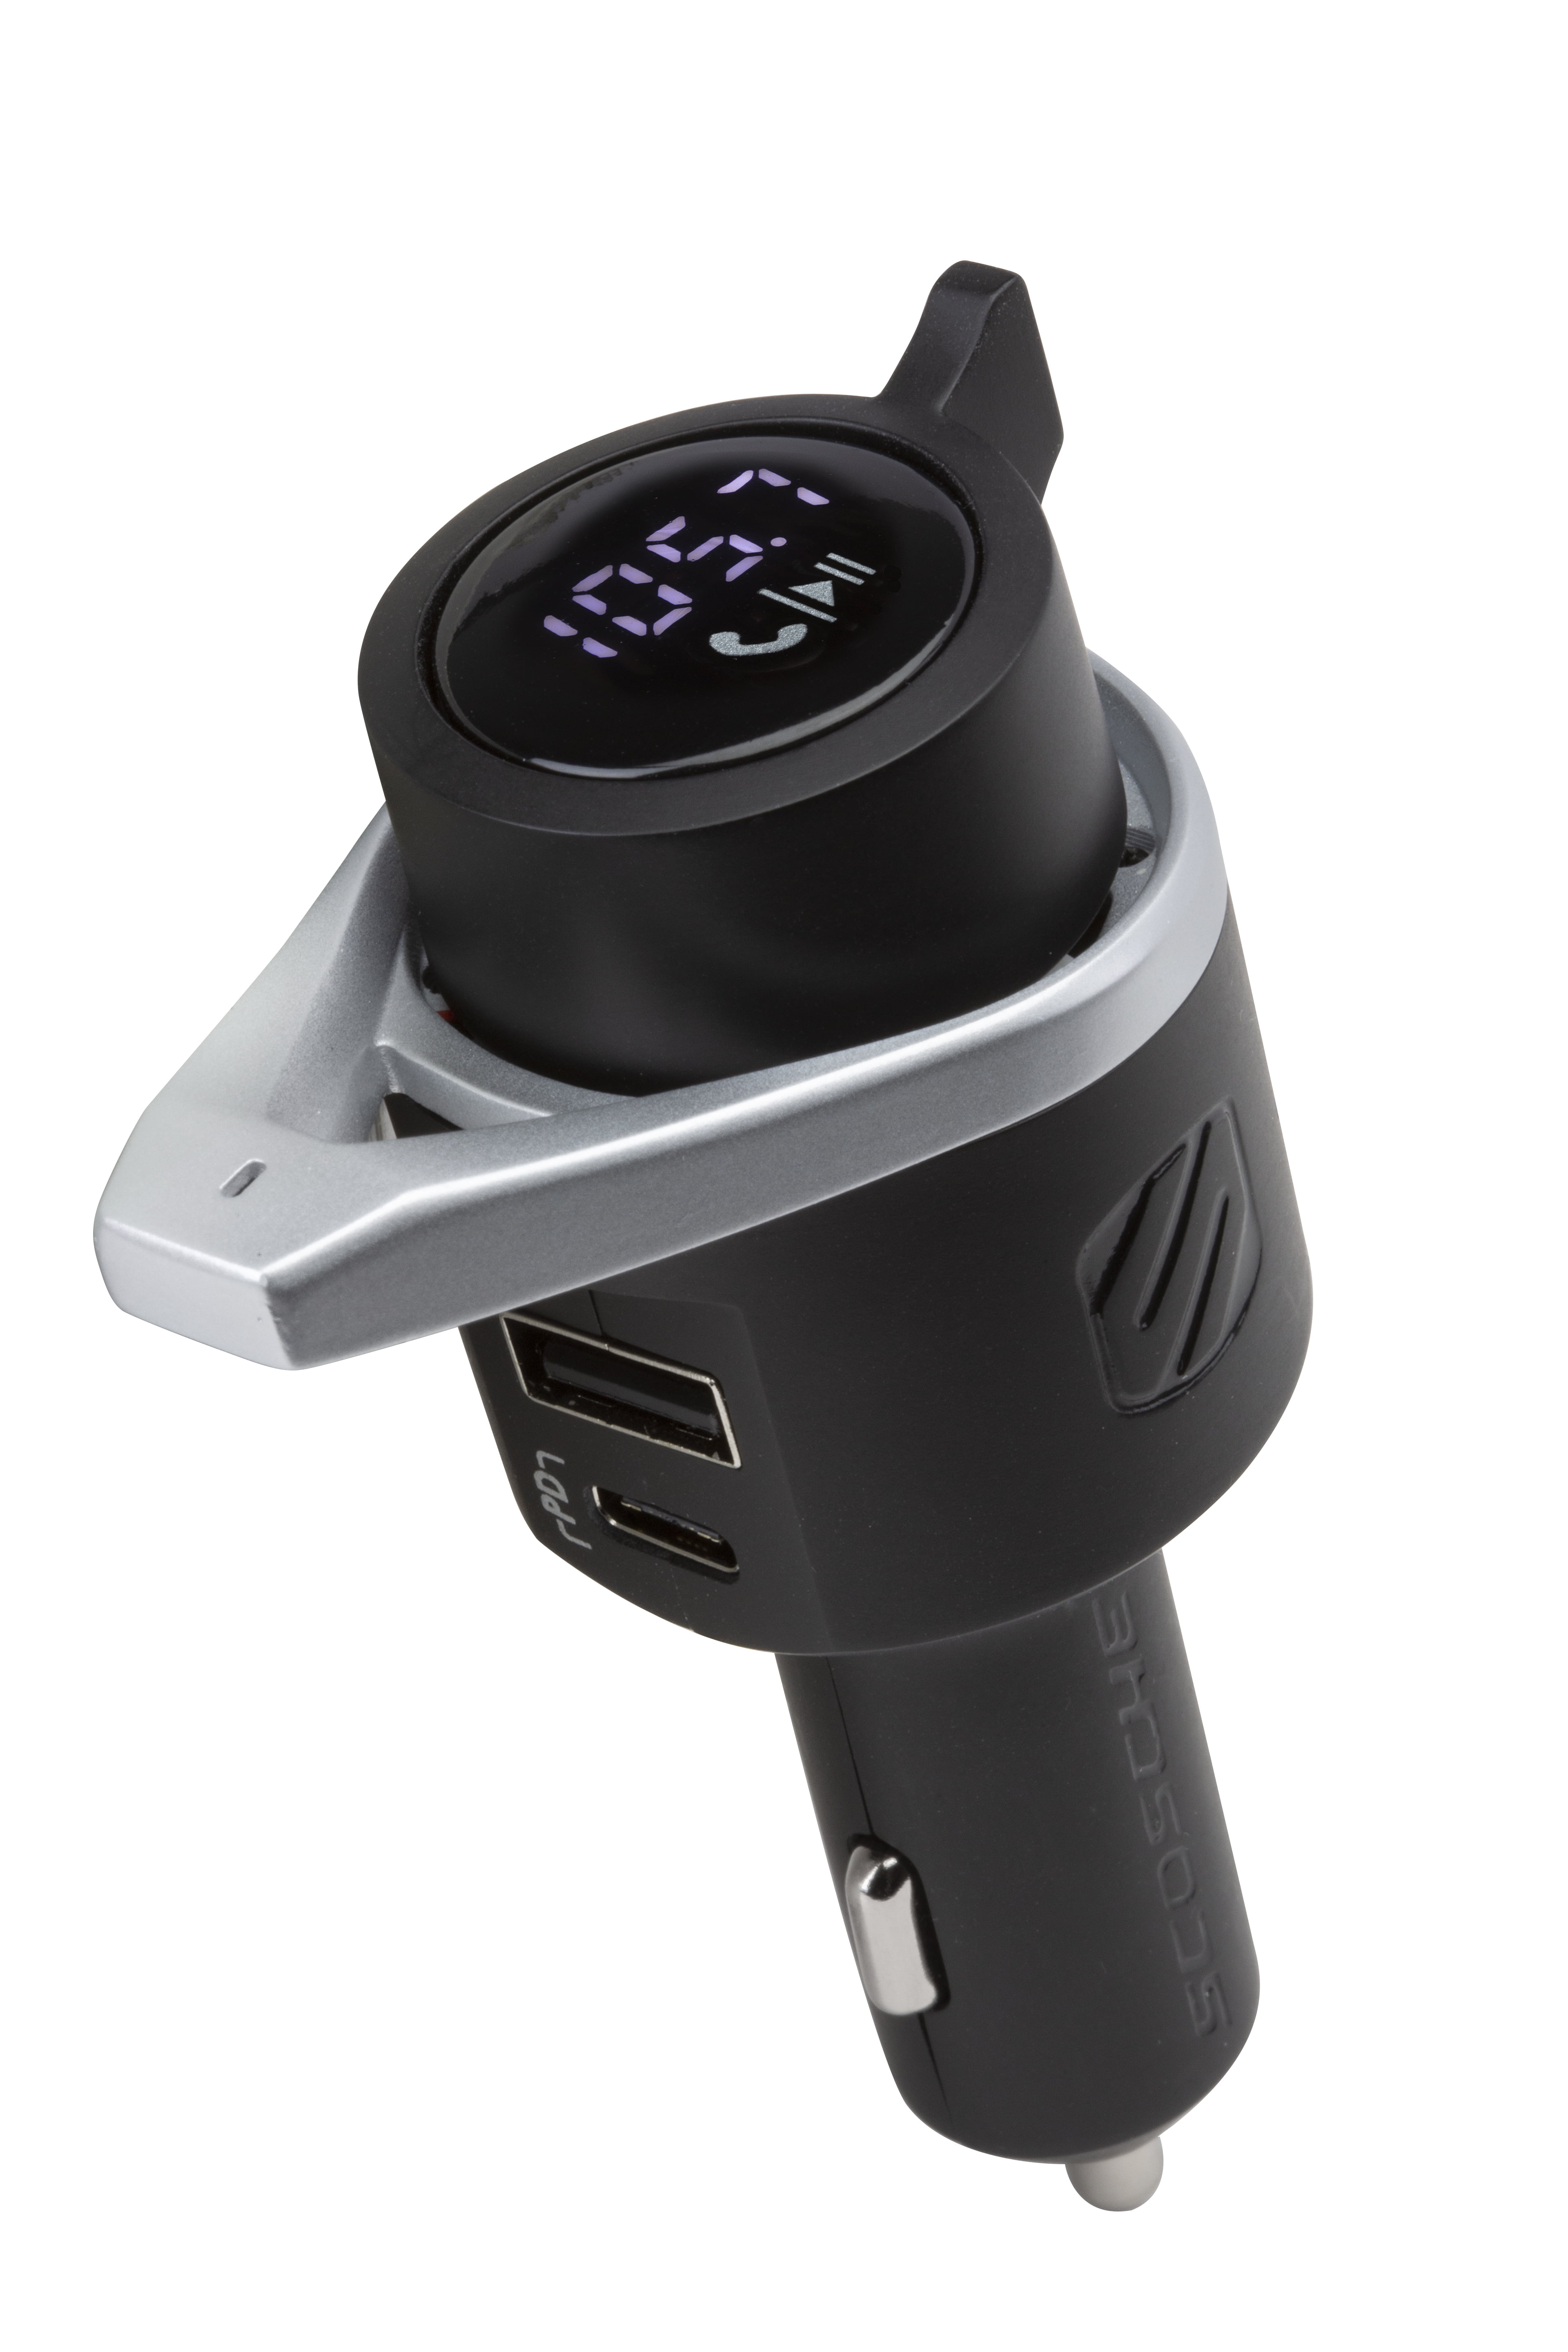 Périphérique Bluetooth Multifonction Pour Voiture Kit Car Earldom ET-M26 -  Lecteur MP3 Port USB MicroSD Radio FM SODI00 - Sodishop